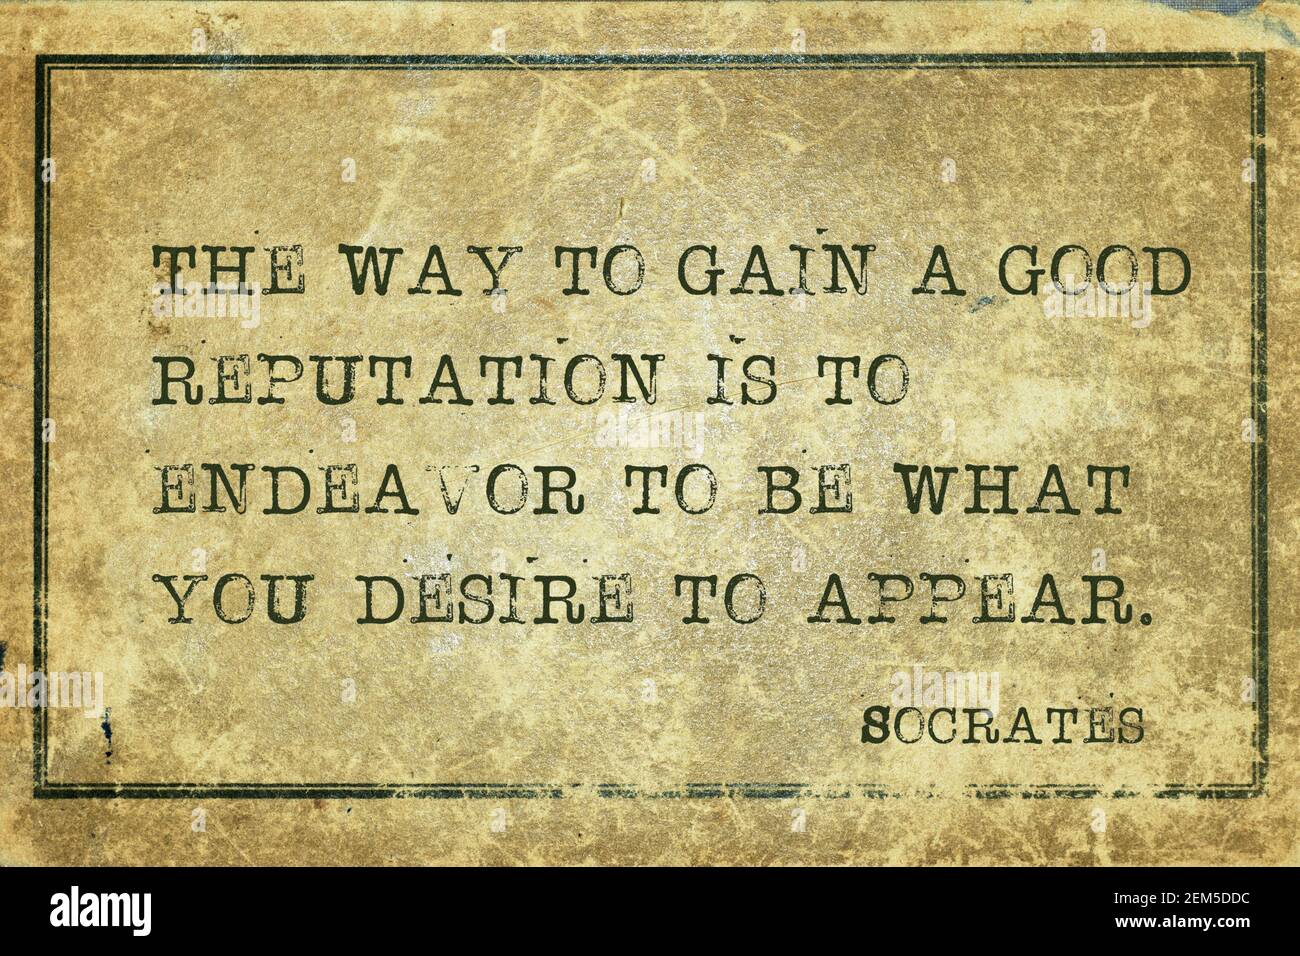 Der Weg, um einen guten Ruf zu gewinnen, ist, sich zu bemühen Zu sein, was Sie sich wünschen zu erscheinen - altgriechisch Philosopher Sokrates Zitat gedruckt auf Grunge vintage Stockfoto